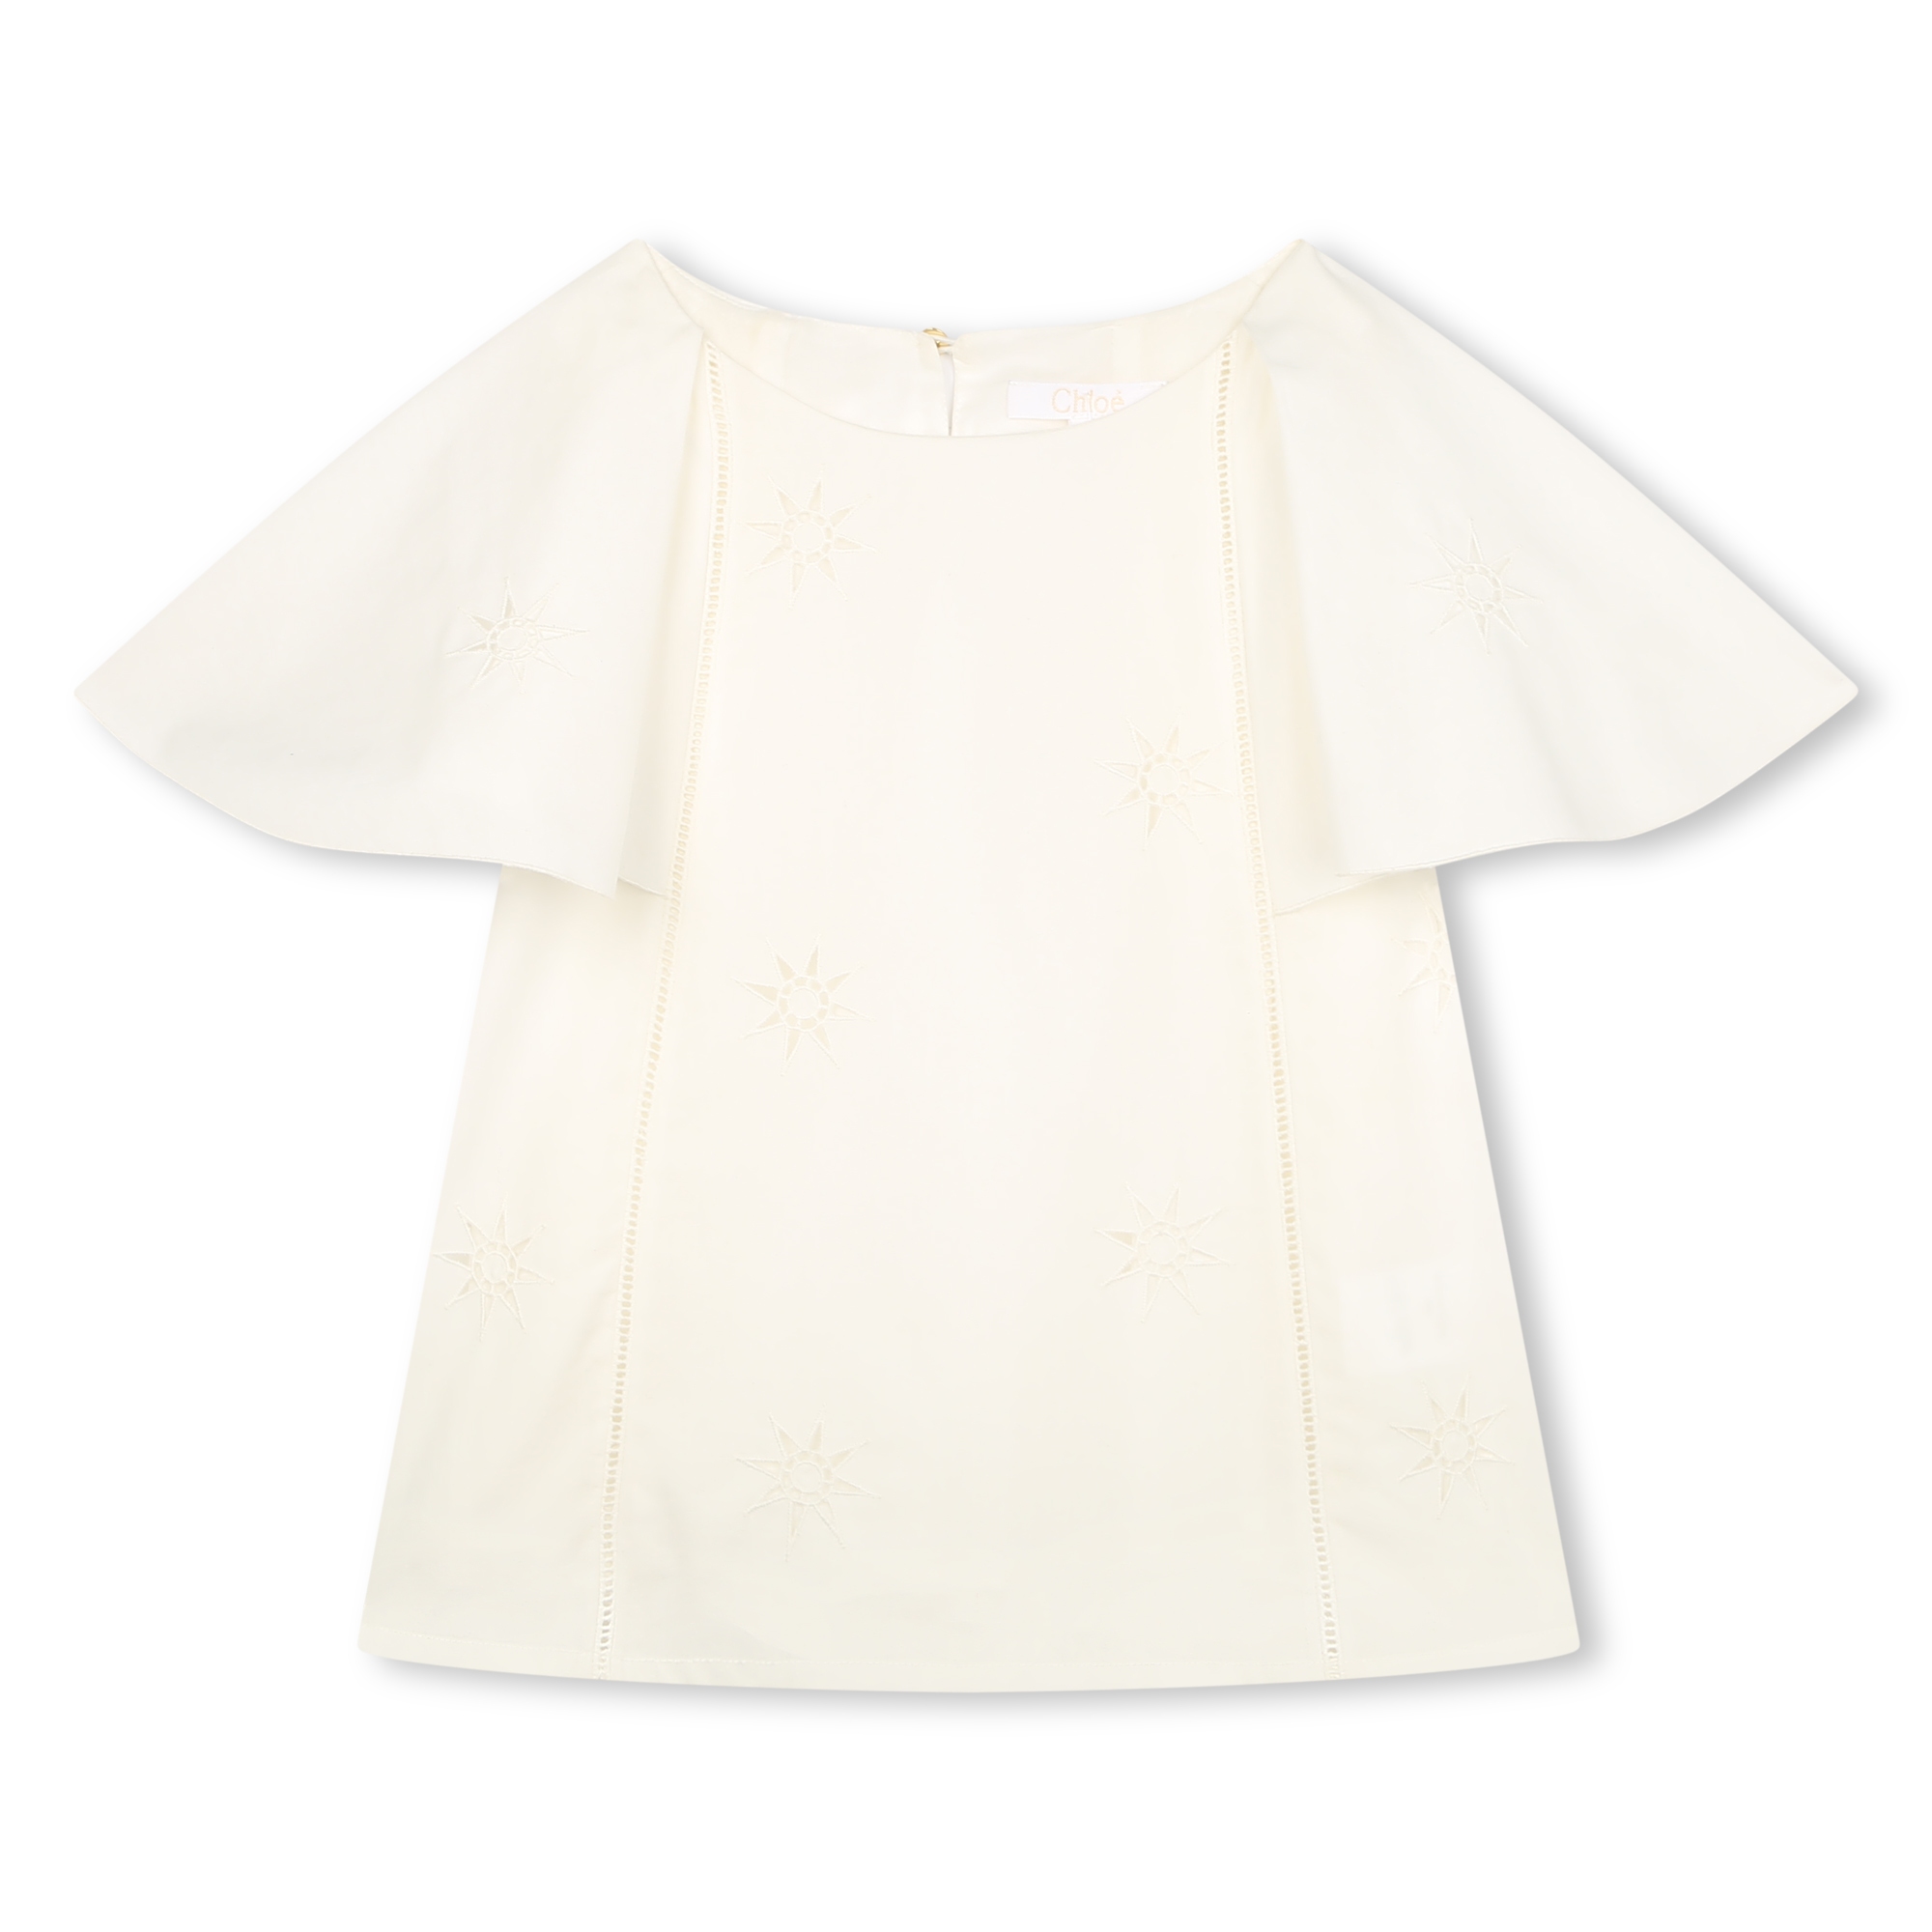 Cotton blouse CHLOE for GIRL